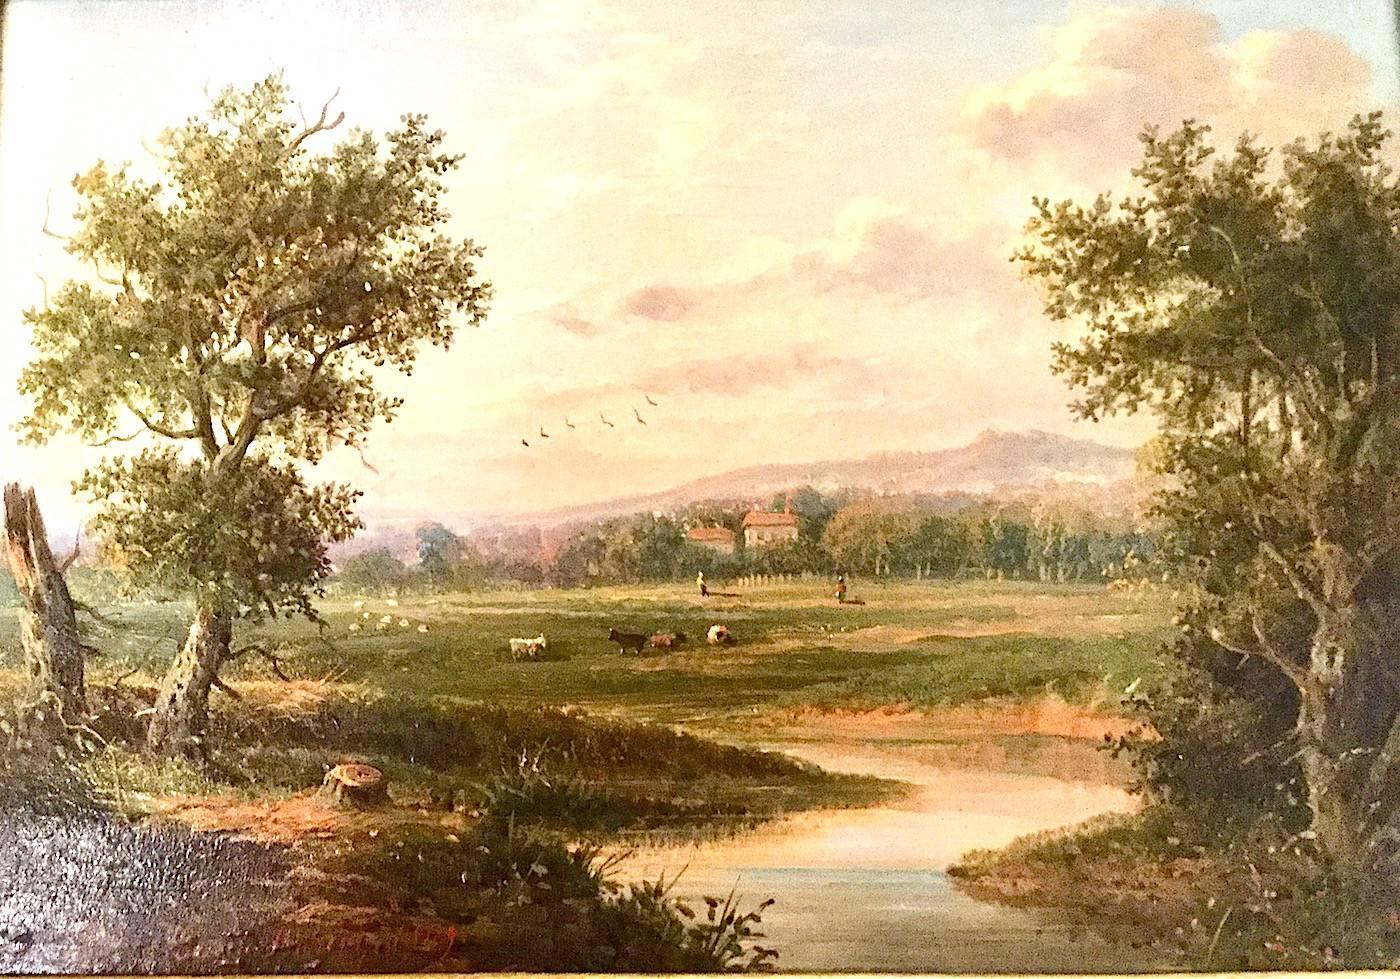 Un paysage de rivière anglaise par EDWIN BUTTERY (1839-1908)
 Huile sur toile.
Taille totale incluant la photo et le cadre : 35cm x 43cm x 6cm
Clairement signé et daté 1869

Un paysagiste britannique du XIXe siècle.  Buttery a peint les scènes